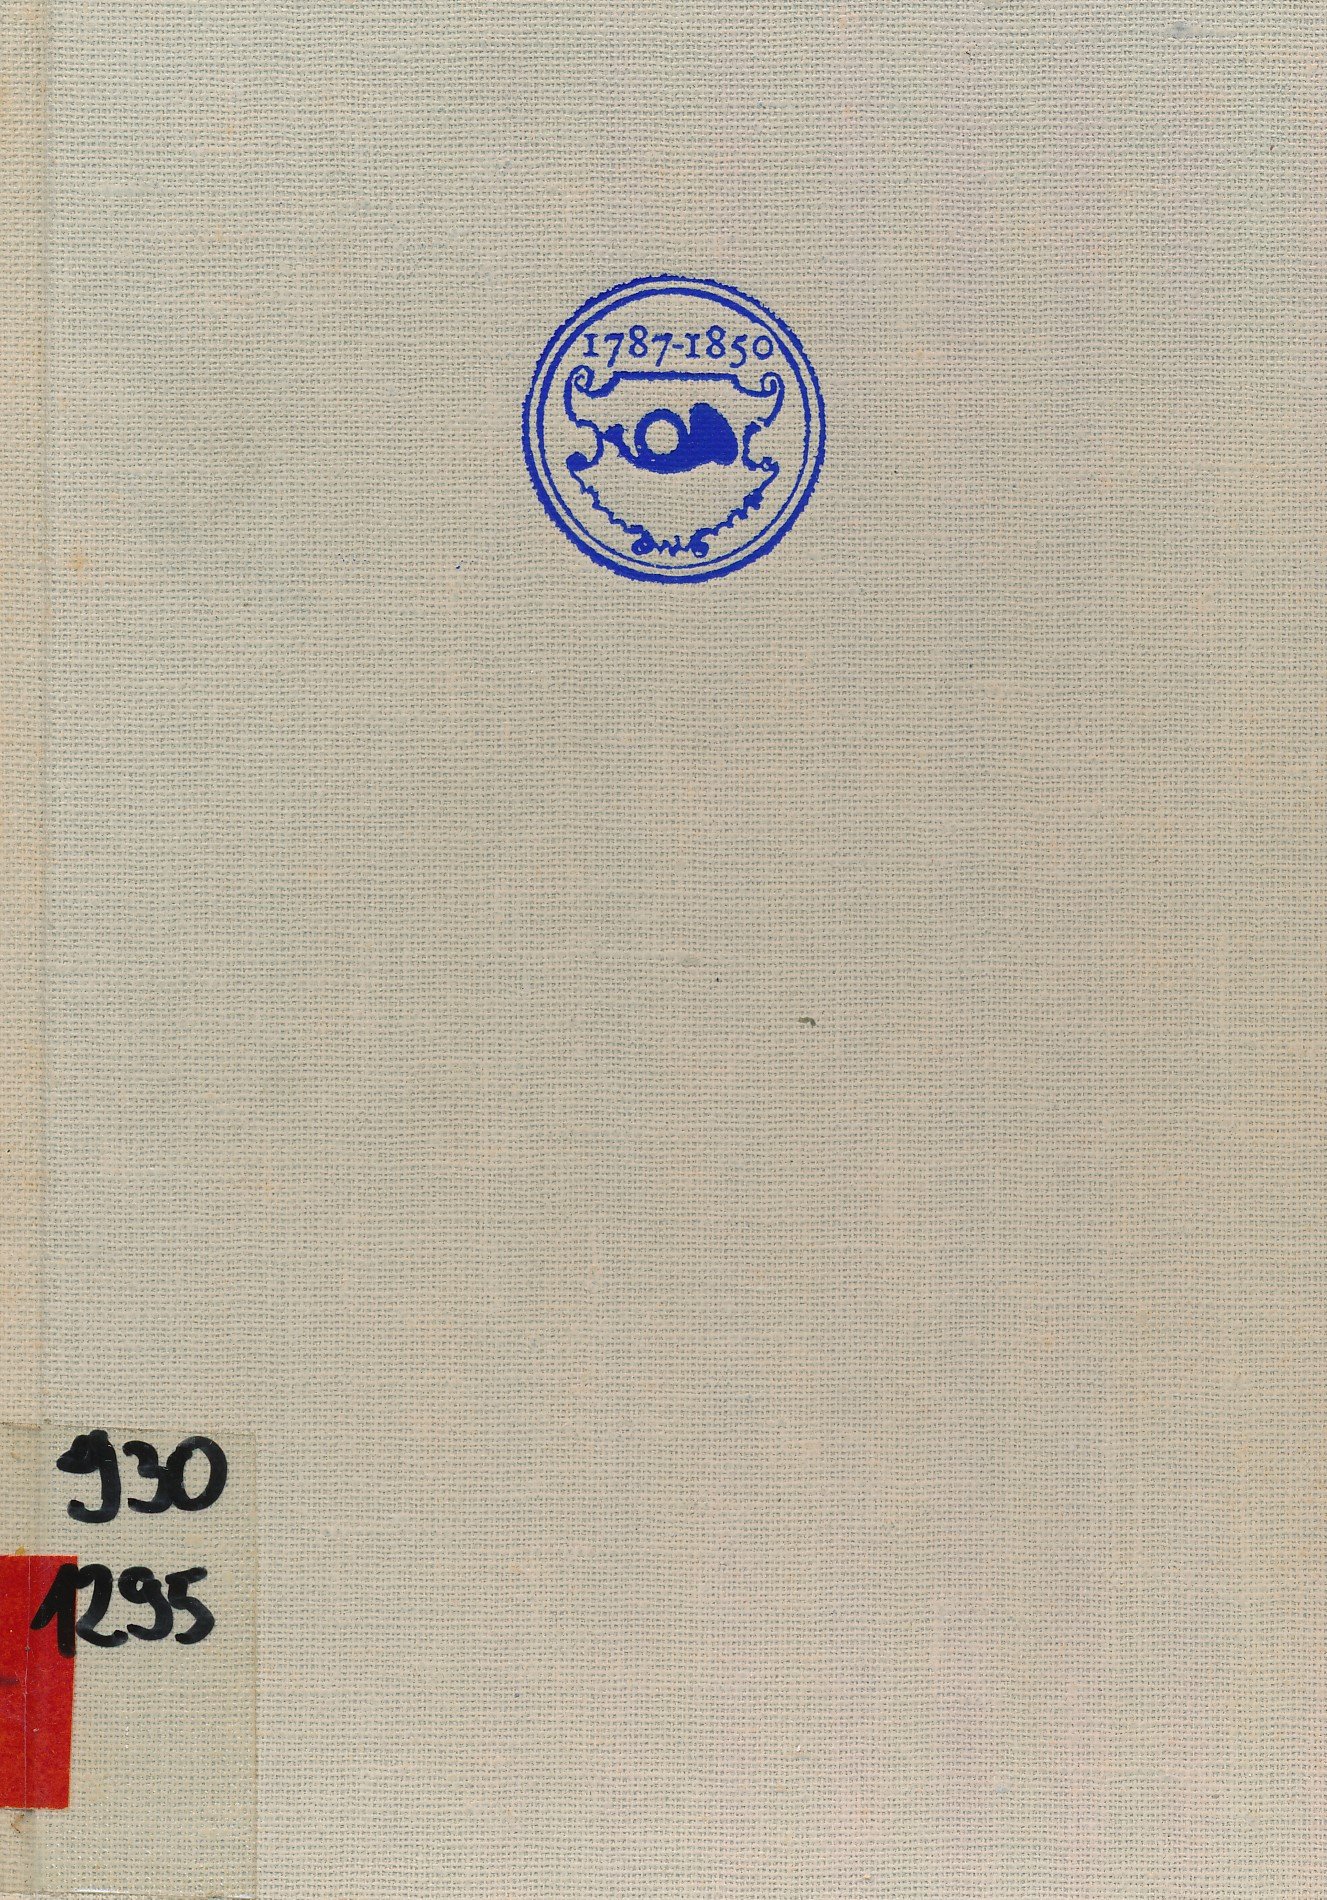 A postaszervezet működése Békés vármegyében 1787 - 1850 (Erkel Ferenc Múzeum és Könyvtár, Gyula CC BY-NC-SA)